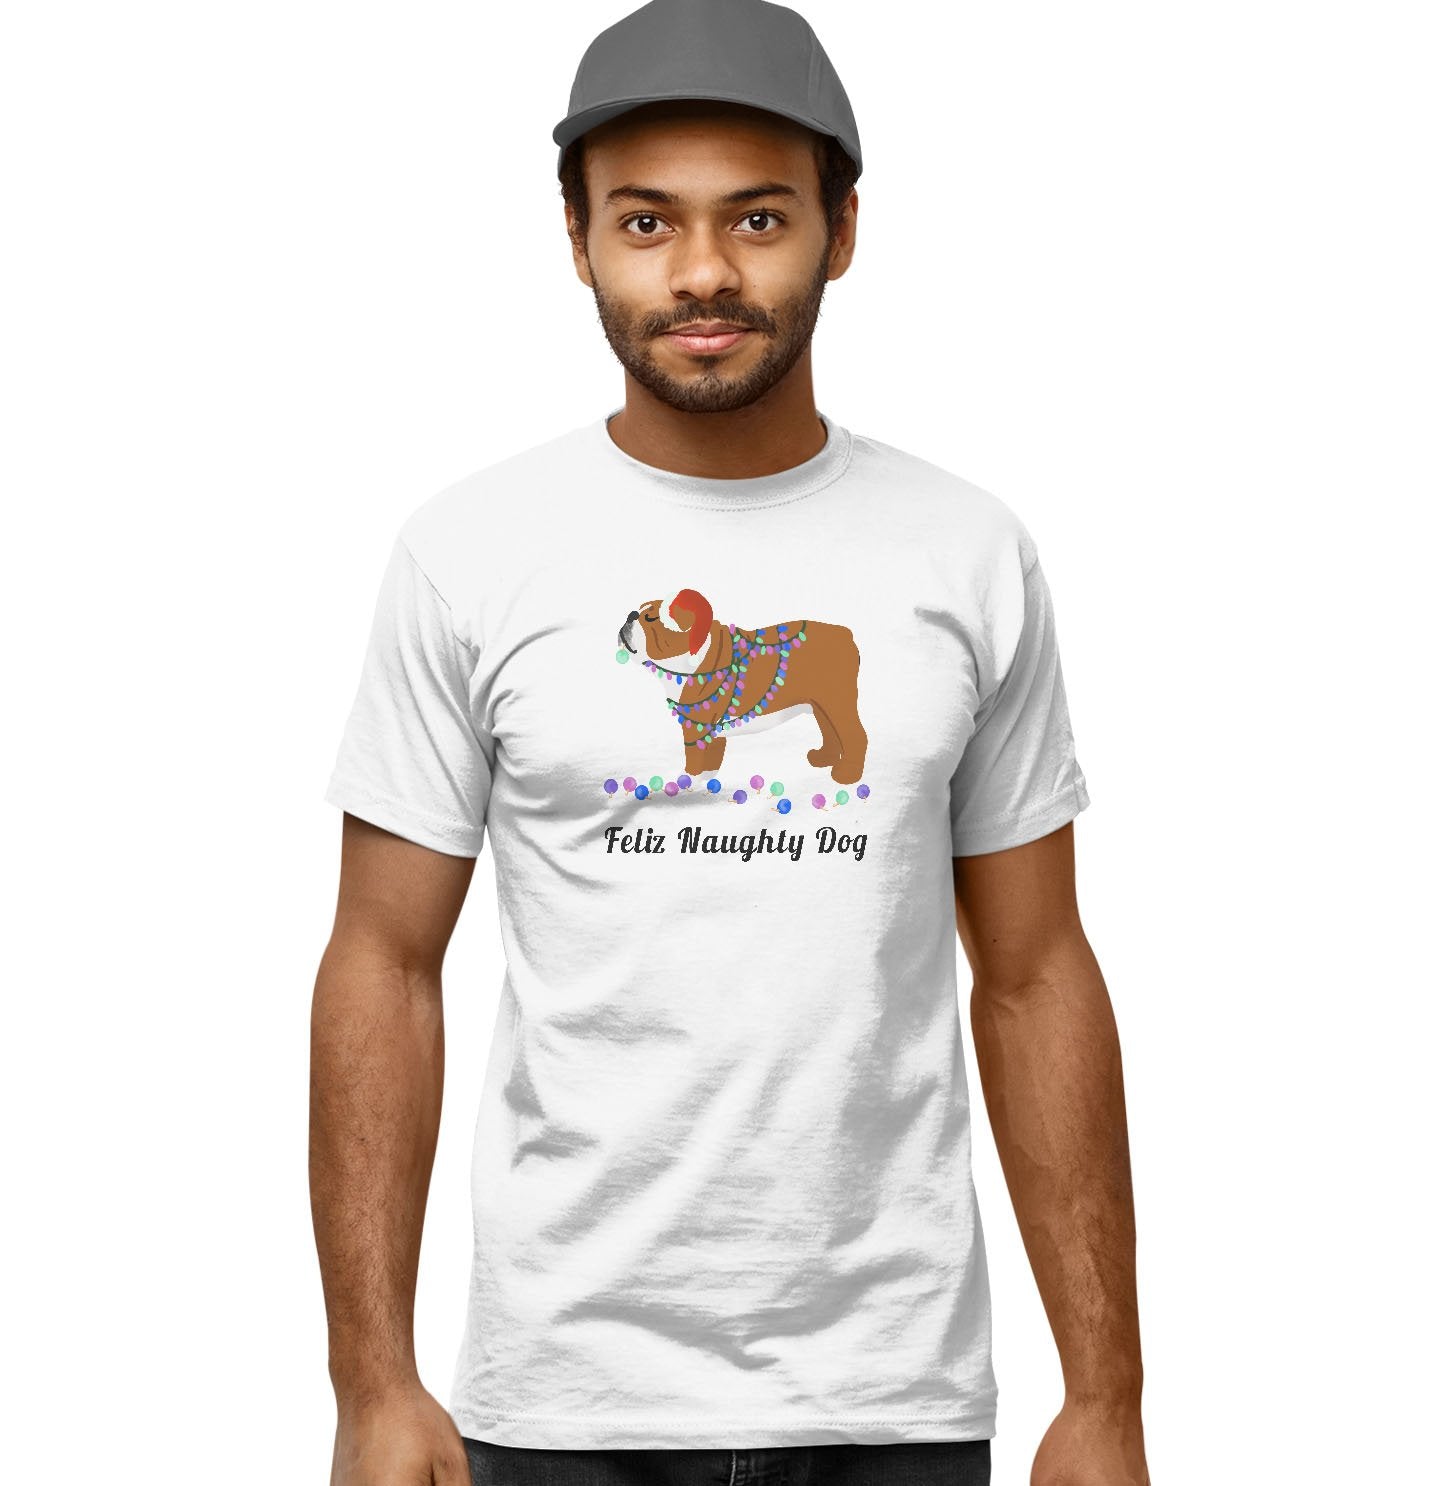 Feliz Naughty Dog Bulldog - Adult Unisex T-Shirt